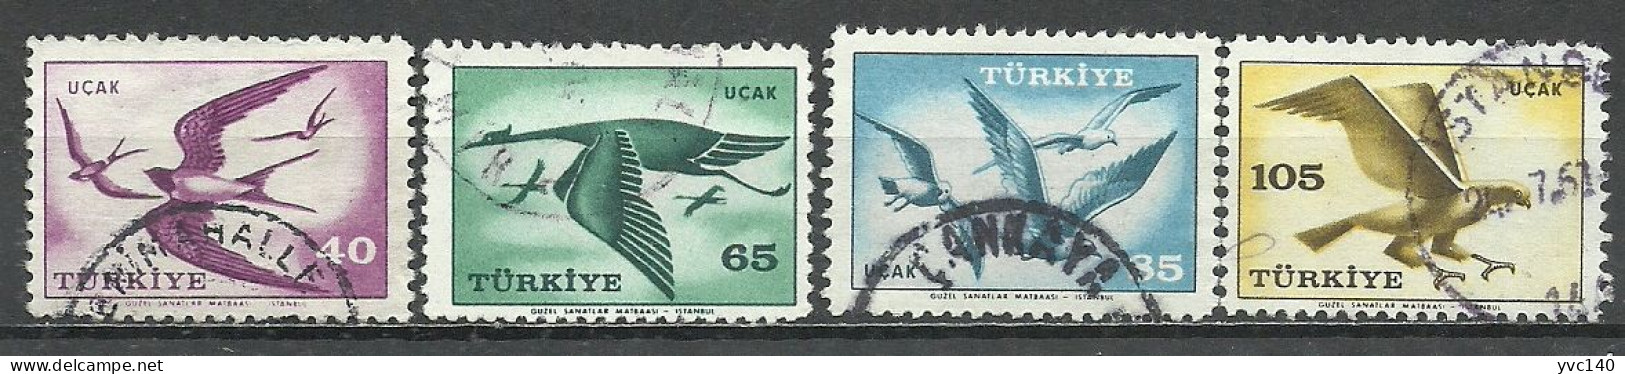 Turkey; 1959 Airmail Stamps - Gebraucht